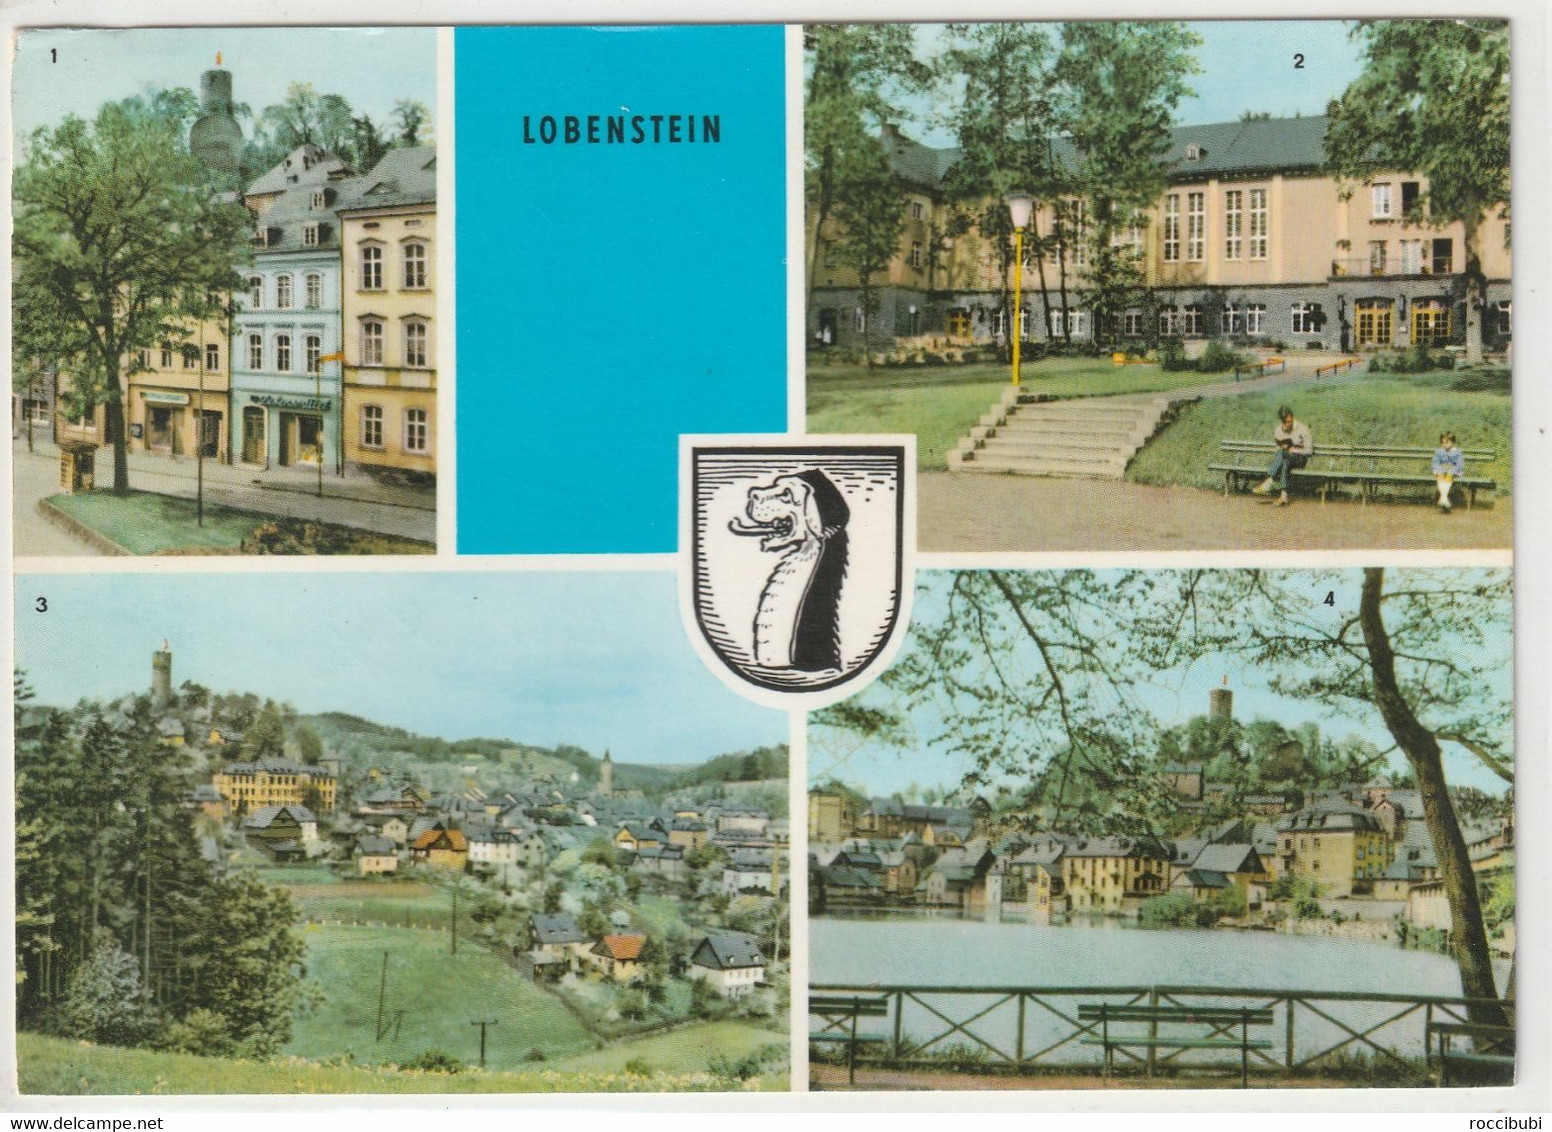 Lobenstein, Thüringen - Lobenstein